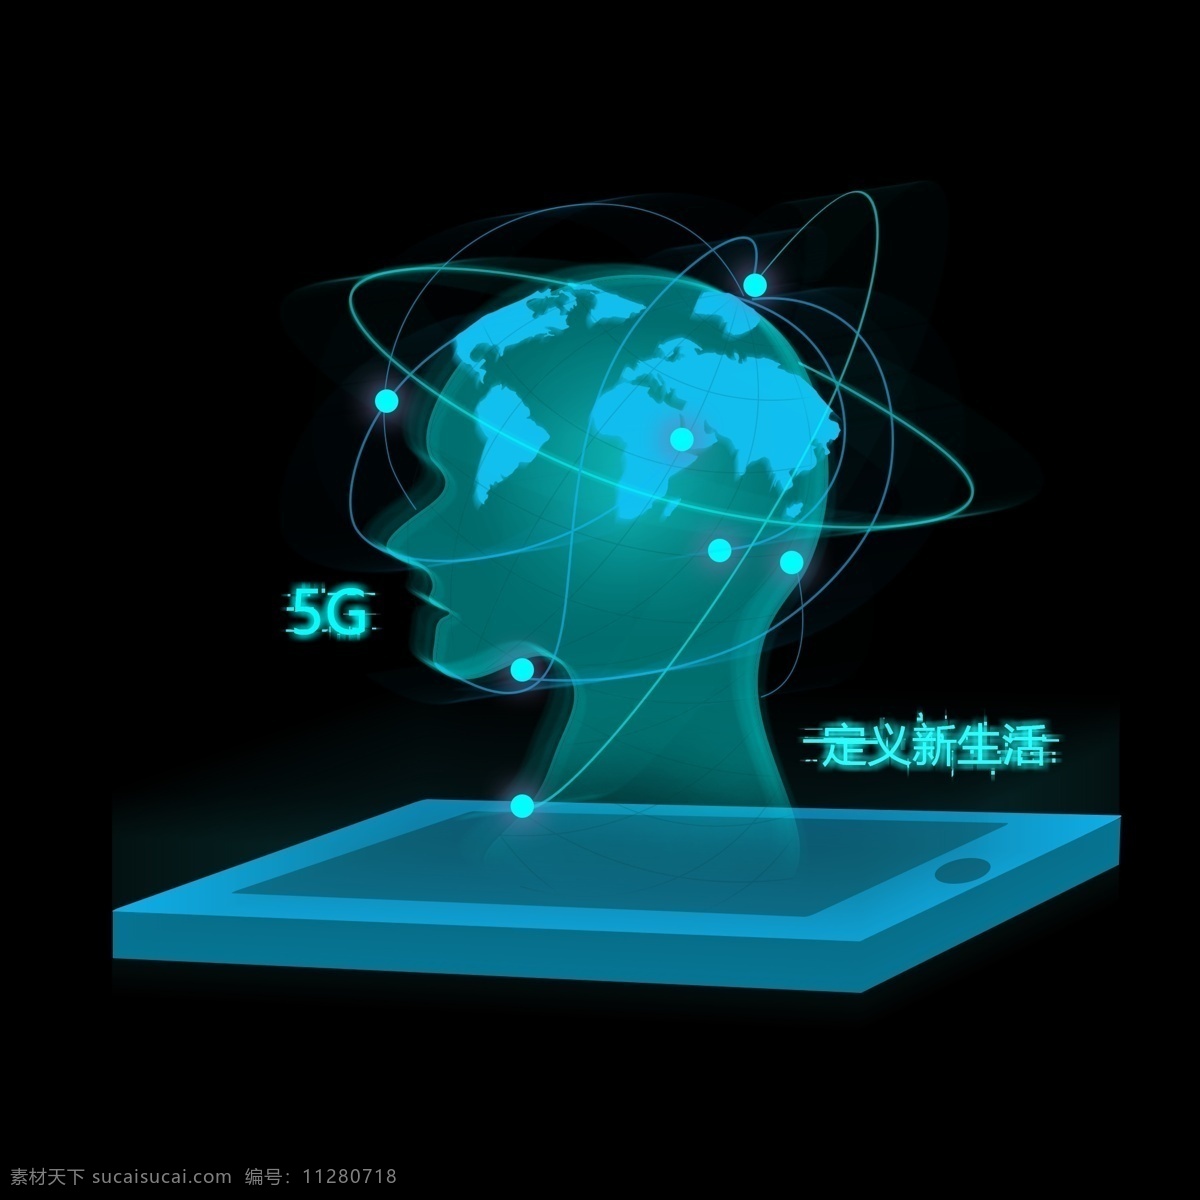 5g 手机 蓝色 透明 人形 未来 科技 风 概念 图案 科技感 定义新生活 电子 全球化 地球 光源 无线 信号